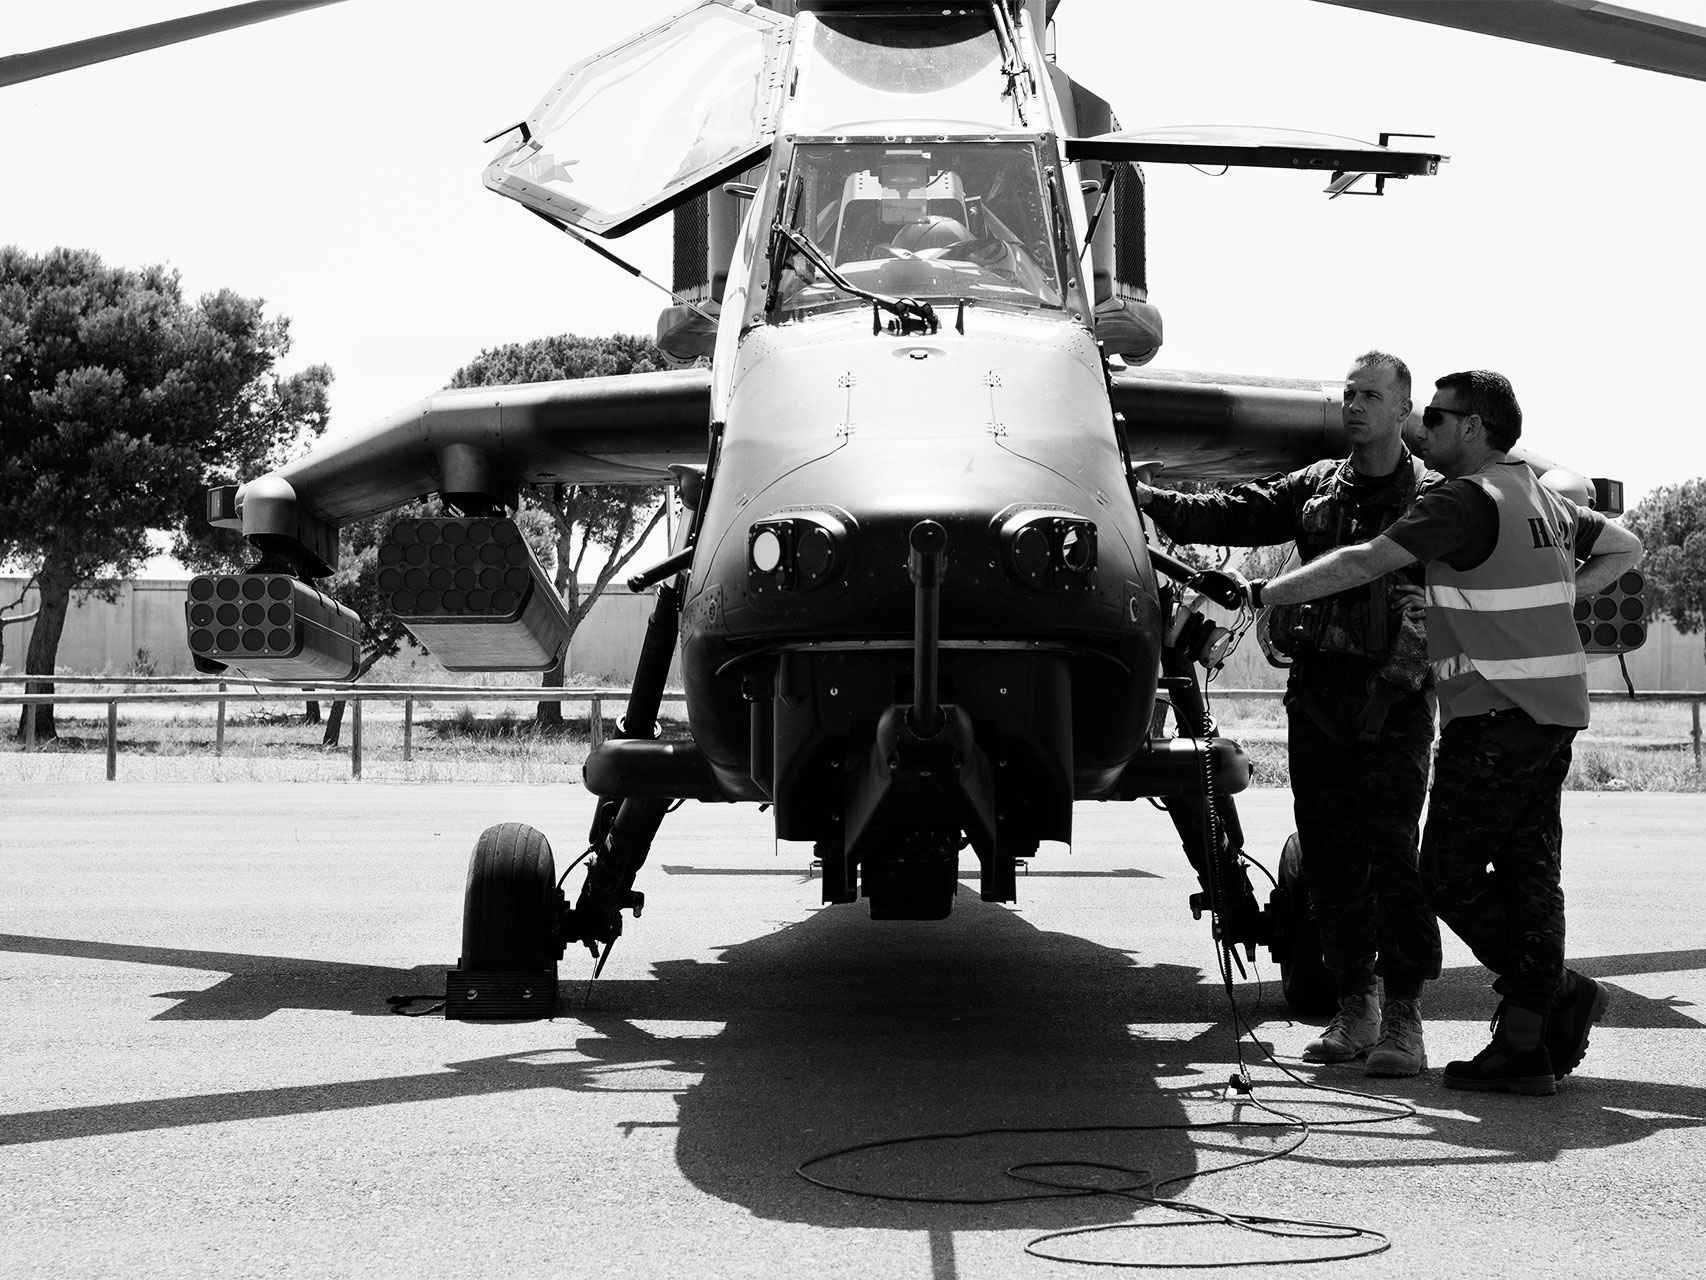 El piloto del Tigre repasa el aparato antes de iniciar el vuelo.